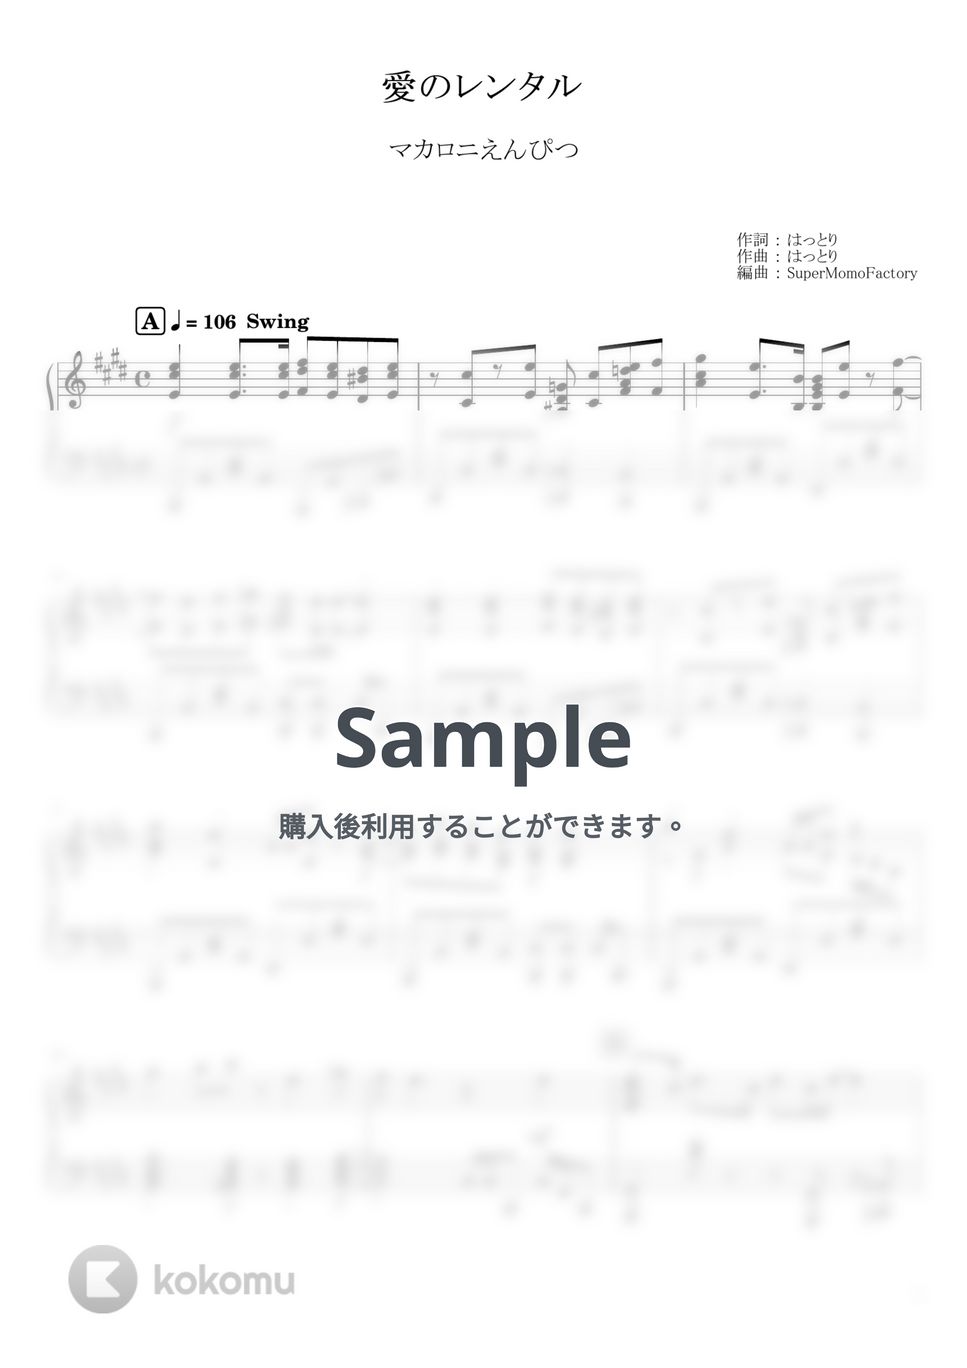 マカロニえんぴつ - 愛のレンタル (ピアノソロ / 上級) by SuperMomoFactory